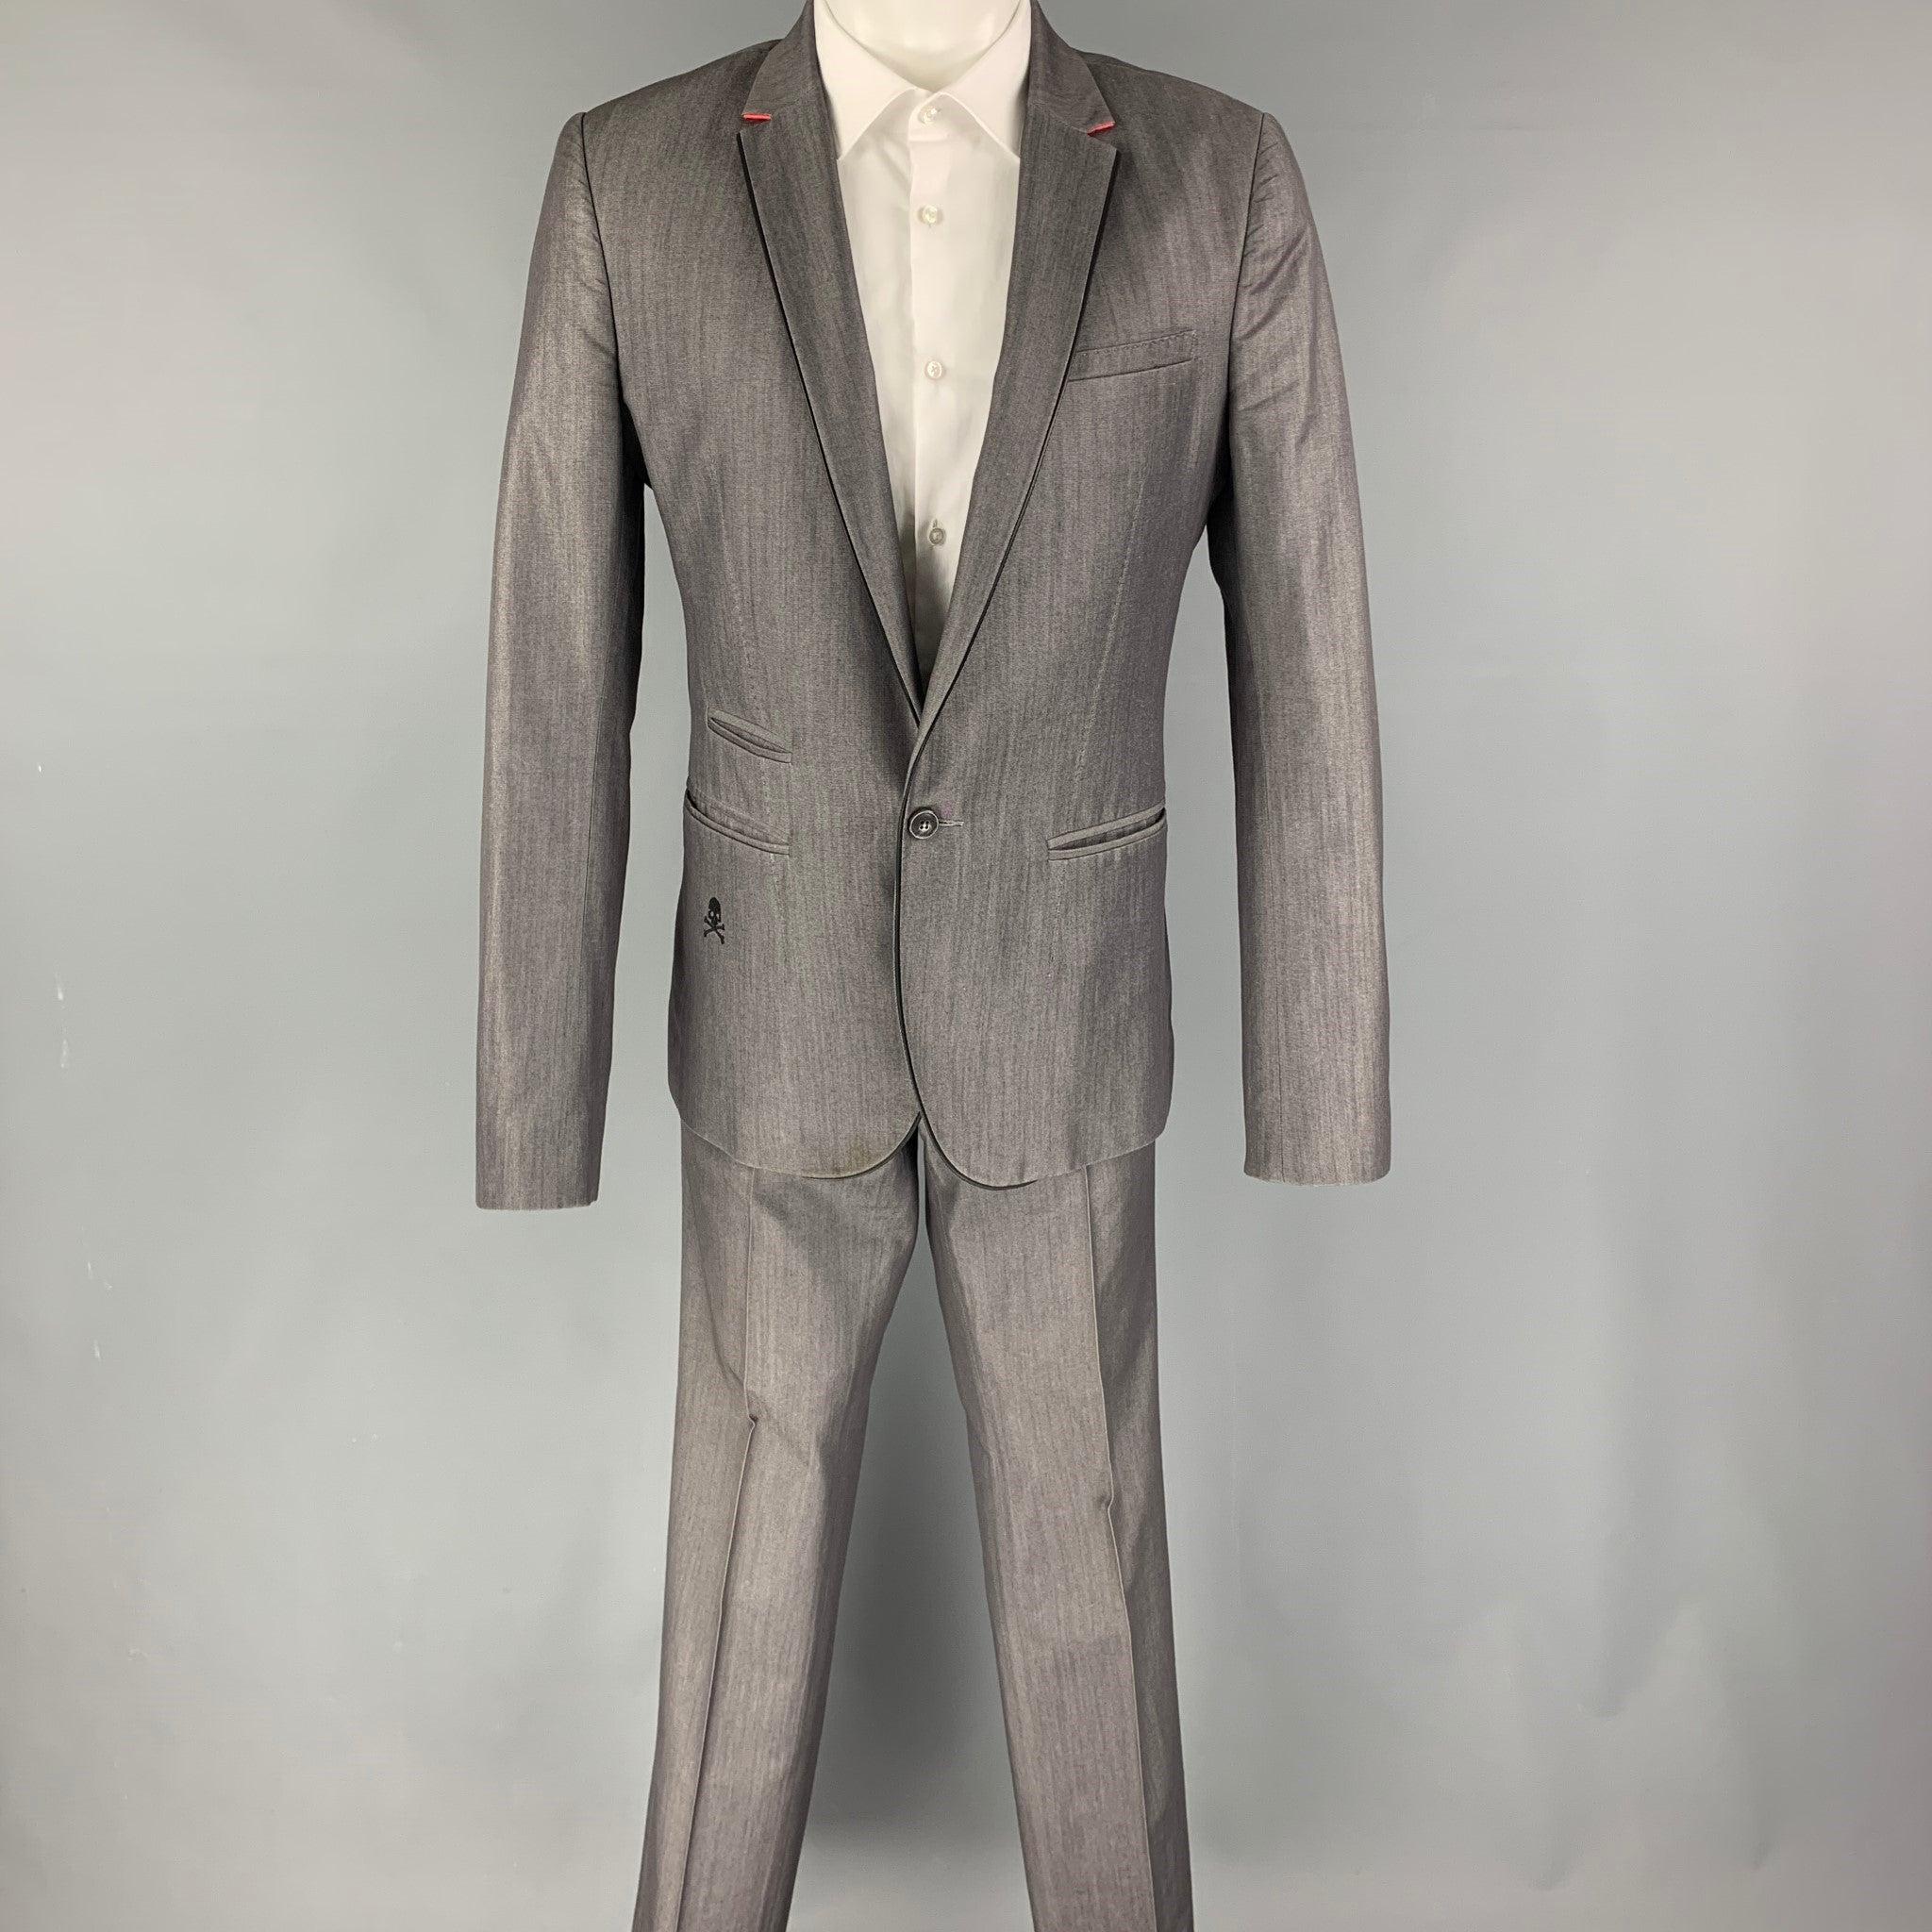 PHILIPP PLEIN
Le costume est en coton mélangé gris clair avec une doublure complète et comprend un manteau de sport à un seul boutonnage avec un revers à cran et un pantalon assorti à devant plat. Excellent état d'origine. 

Marqué :   L 

Mesures :